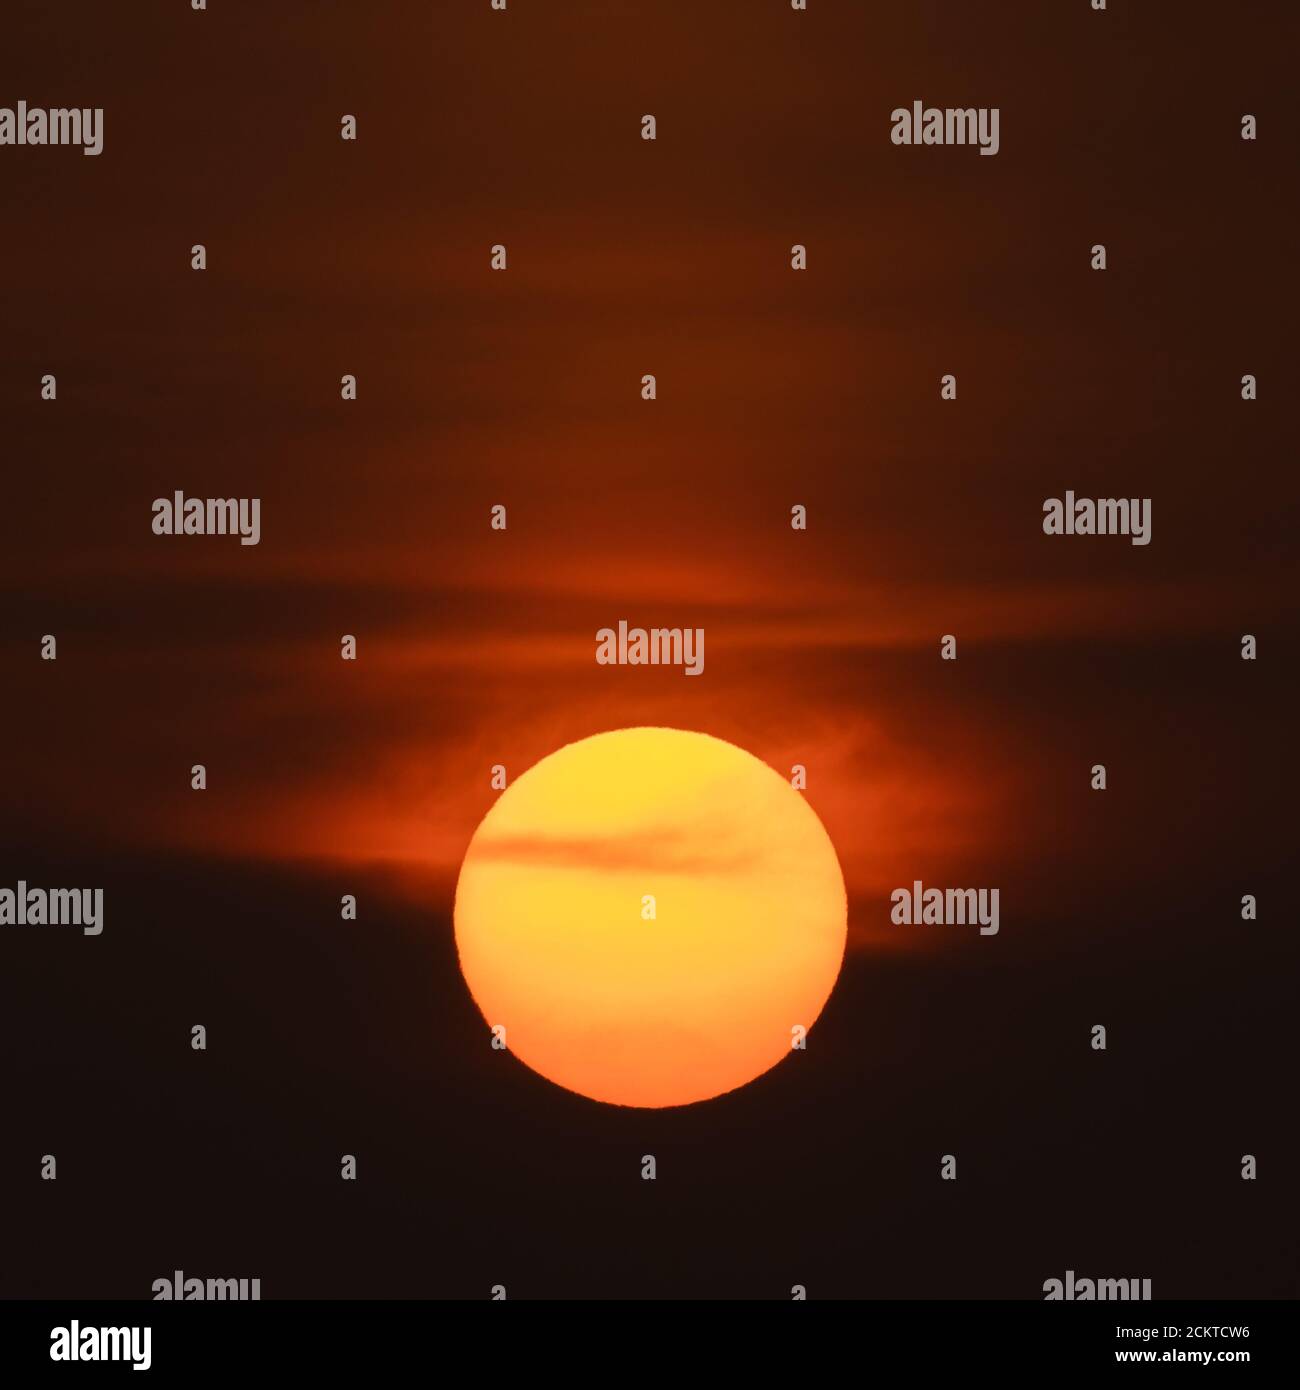 Wetter in Großbritannien: Ein nebliger, gedämpfter Sonnenuntergang Stockfoto